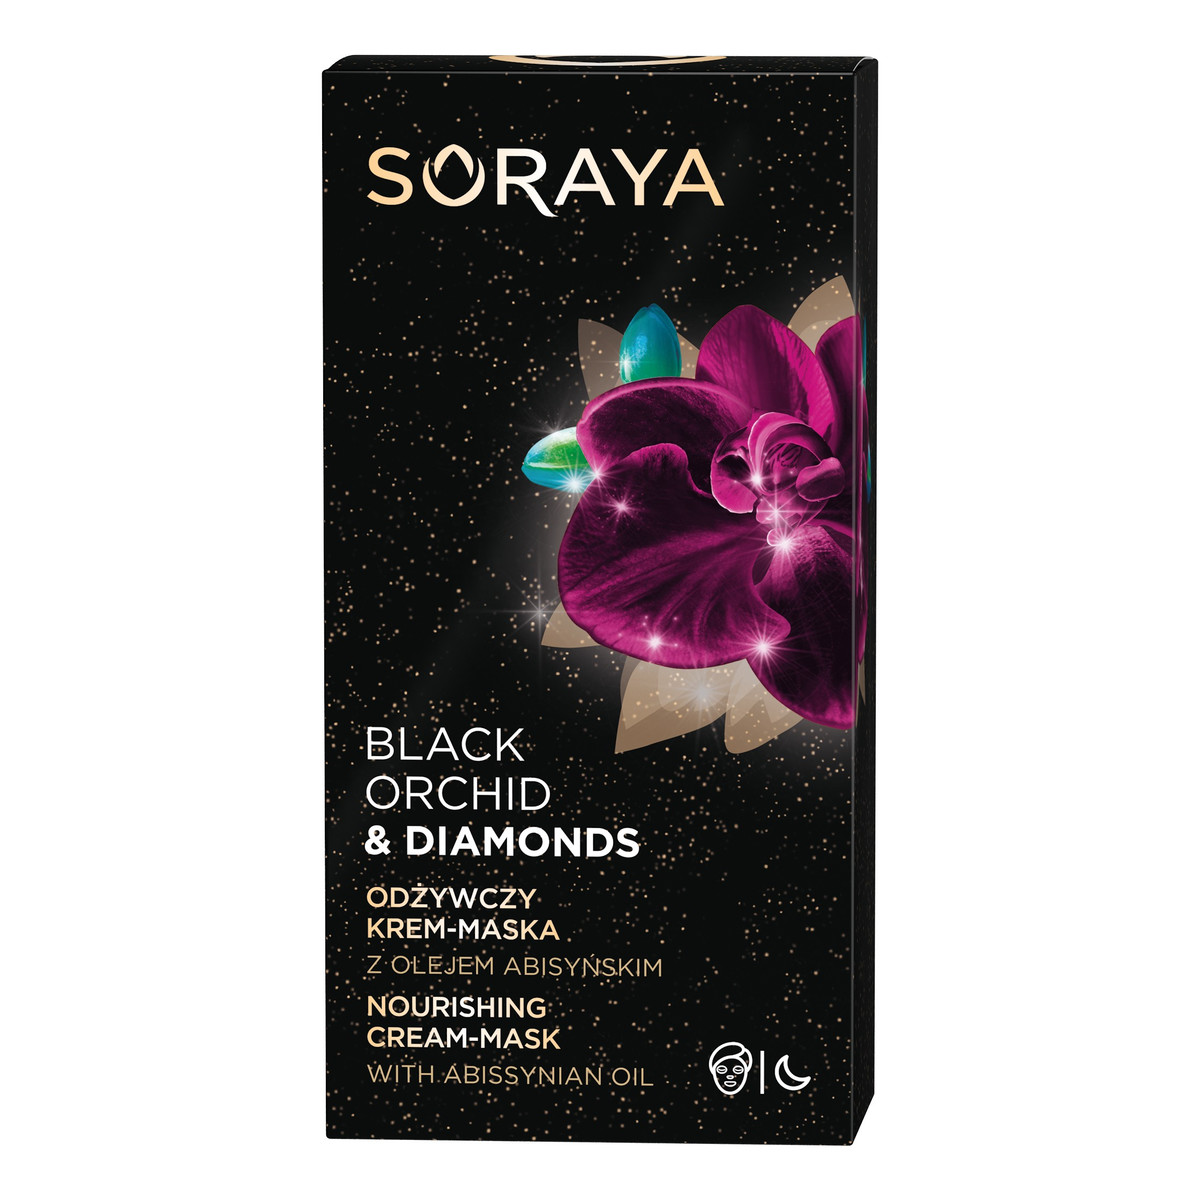 Soraya Black Orchid & Diamonds Odżywczy Krem-maska na noc 50ml